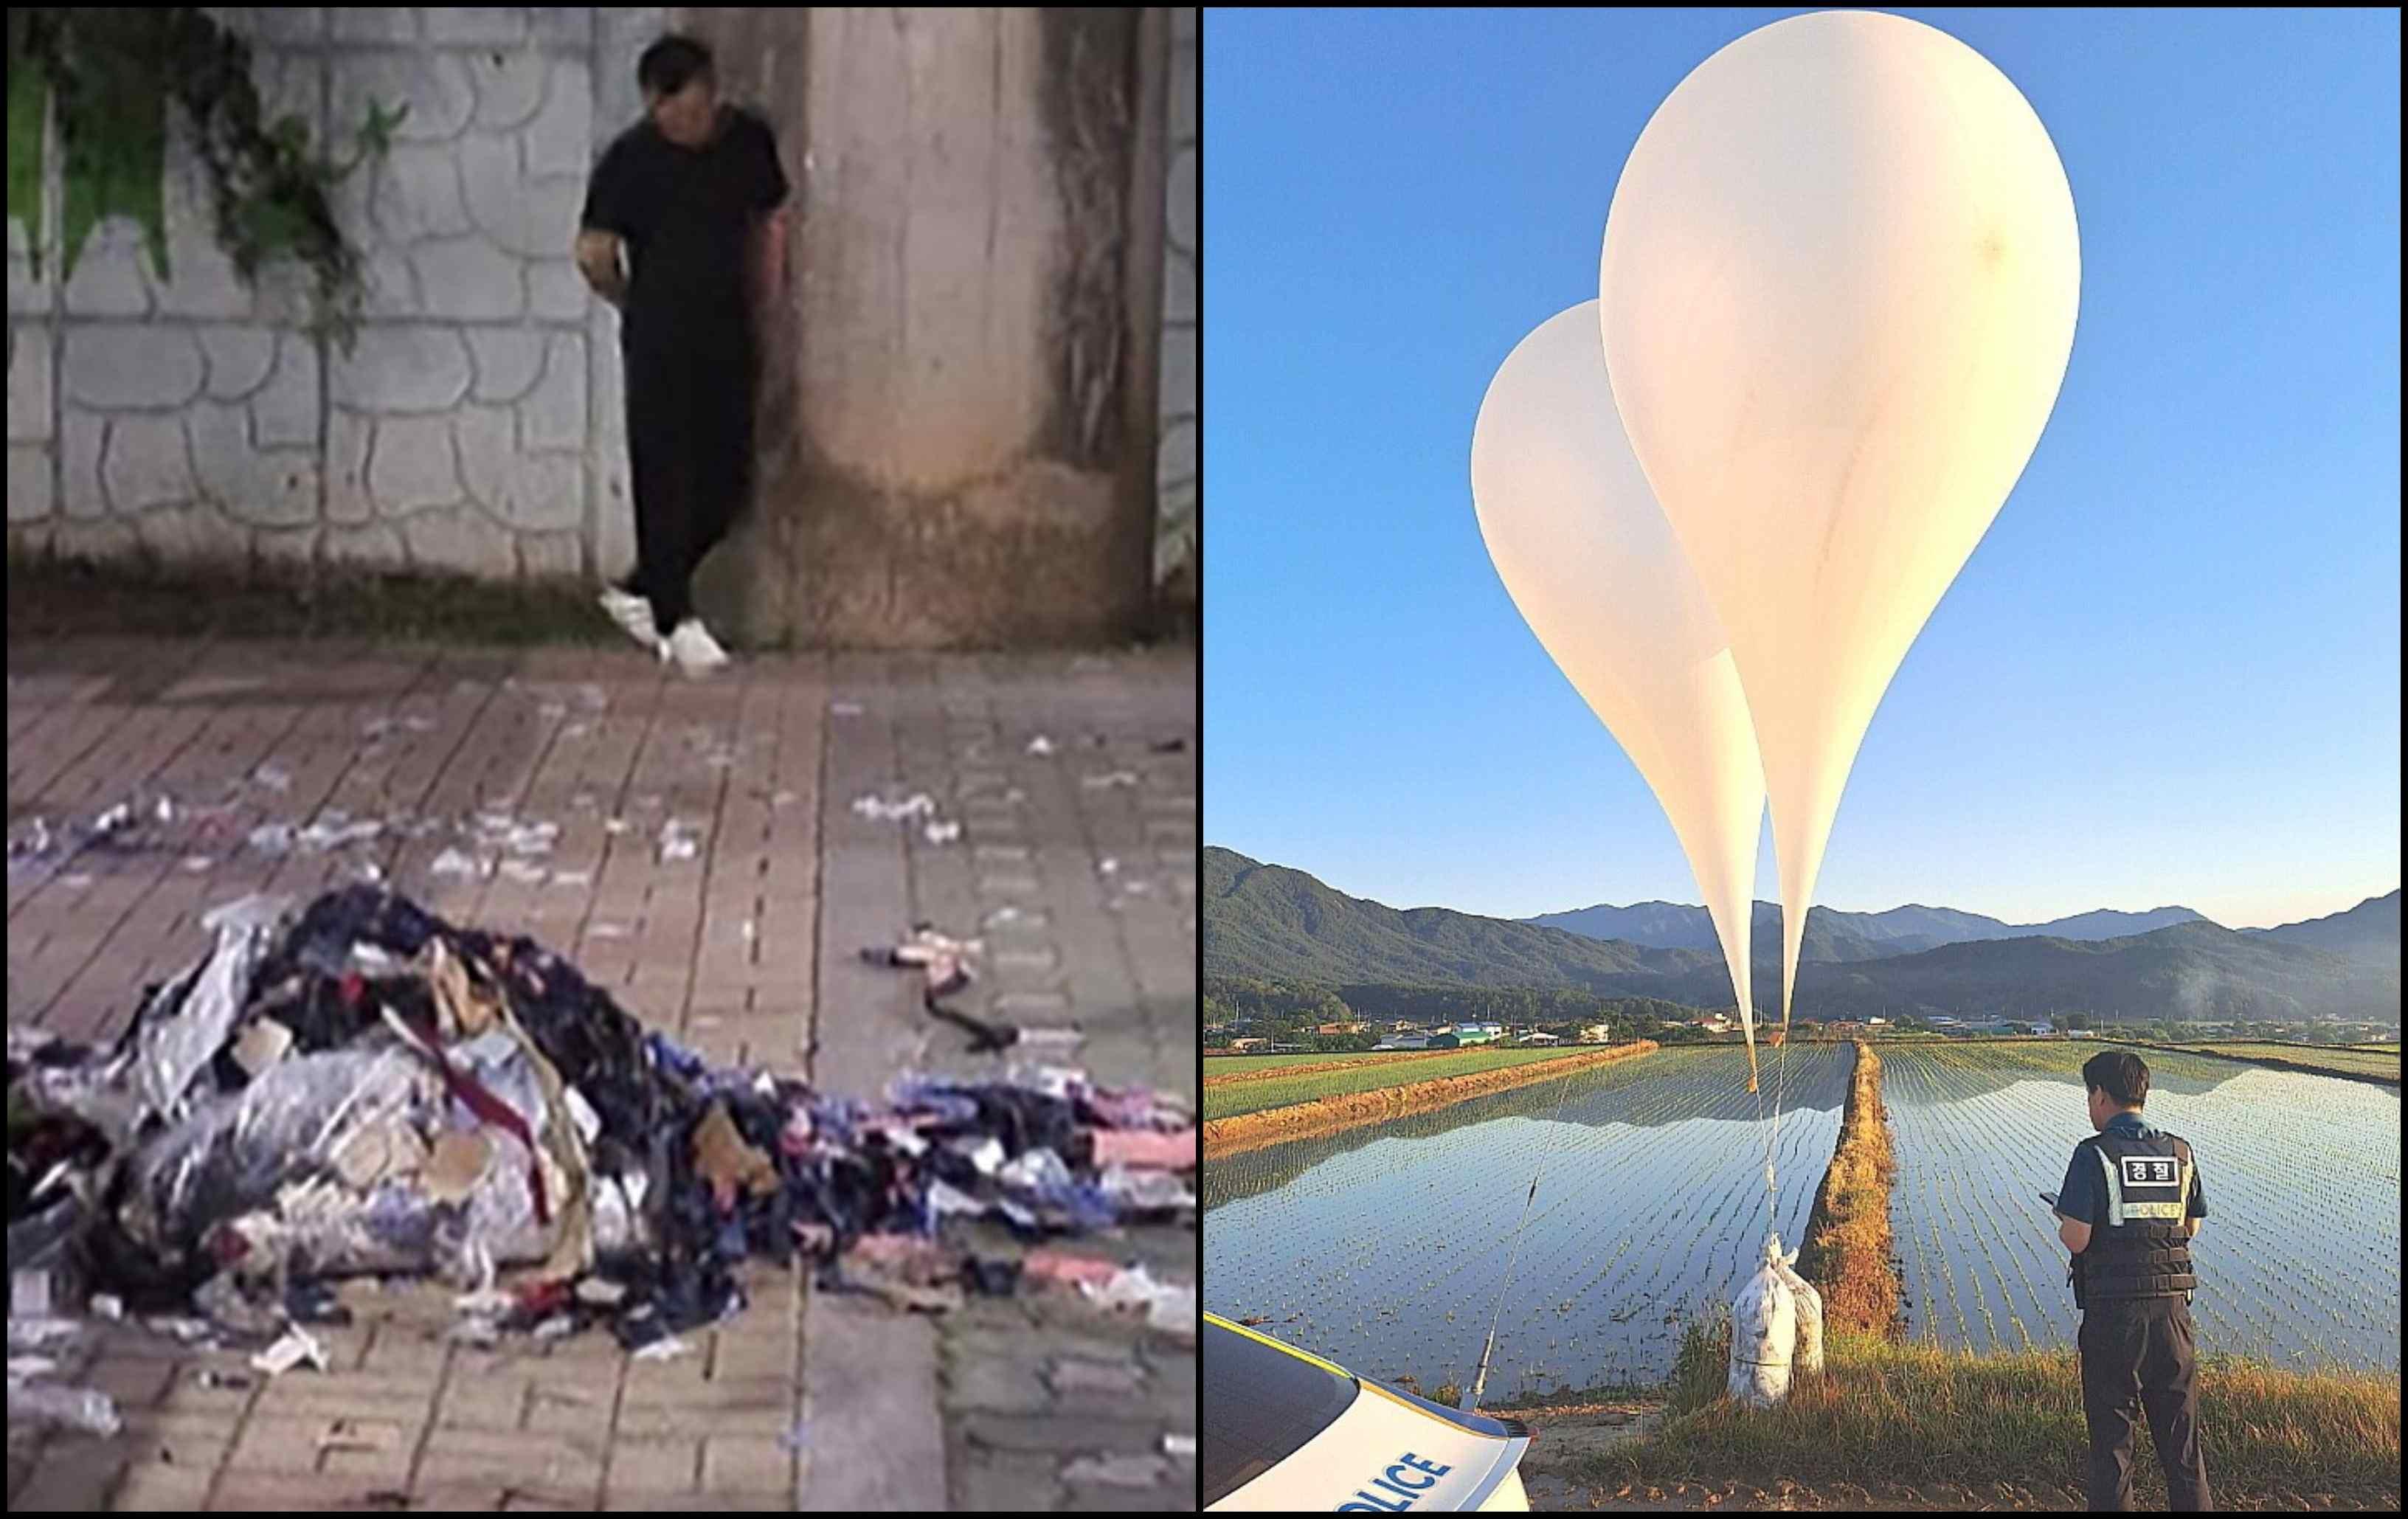 Kuzey Kore yine çöpünü komşuya attı: 600 balon gönderdi!